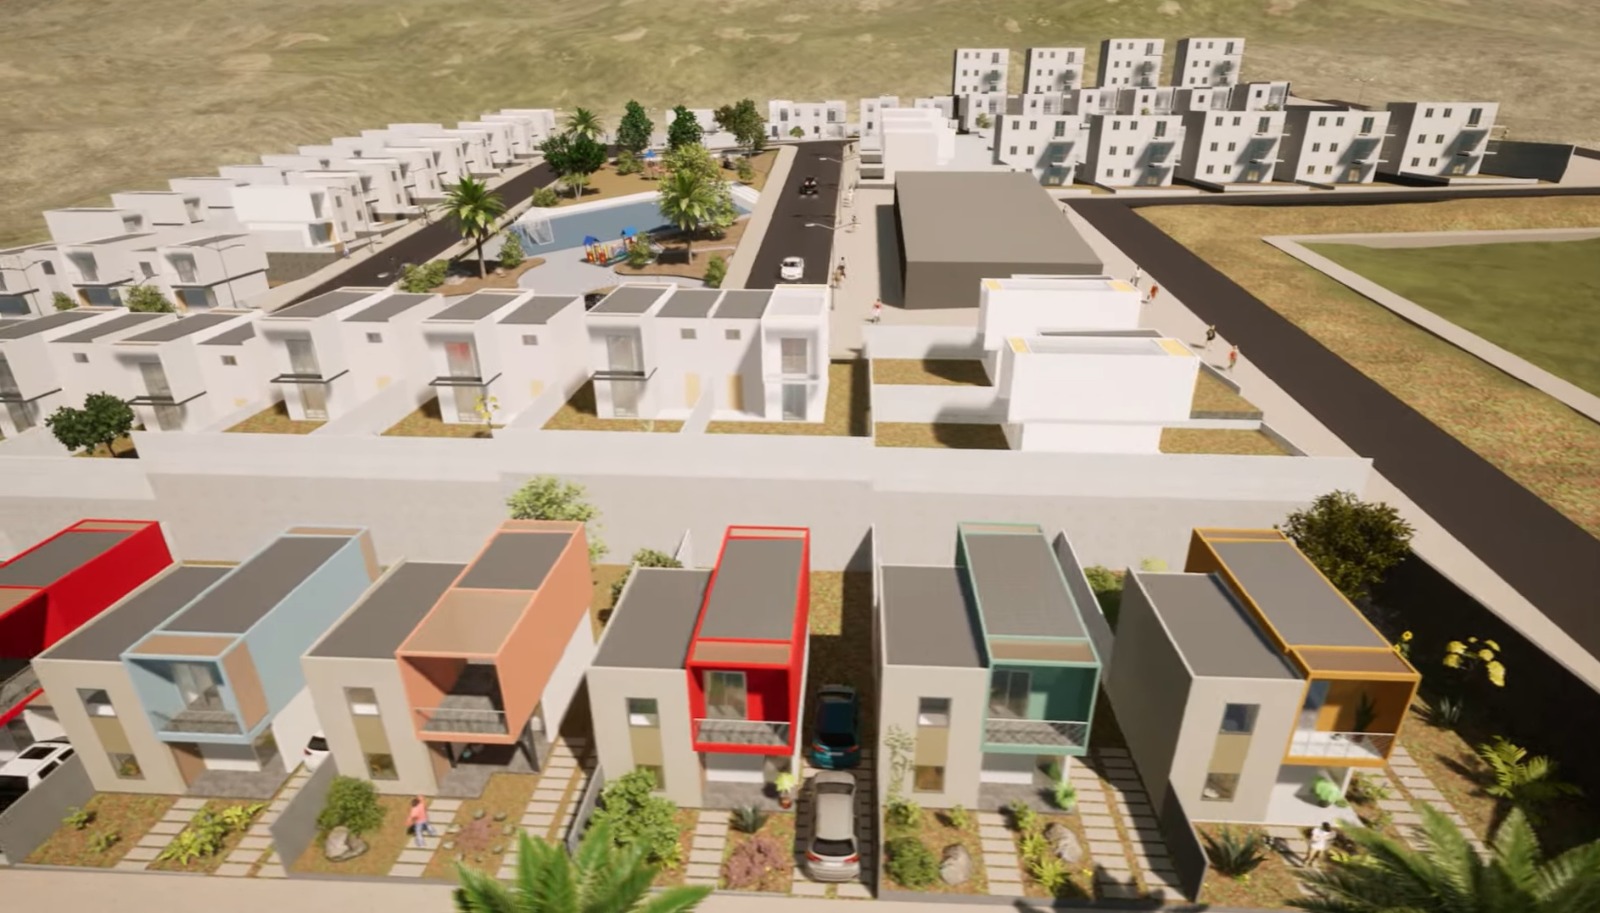 Concejo Municipal de Iquique aprueba habilitación normativa para conjunto habitacional "Altos de Playa Blanca"